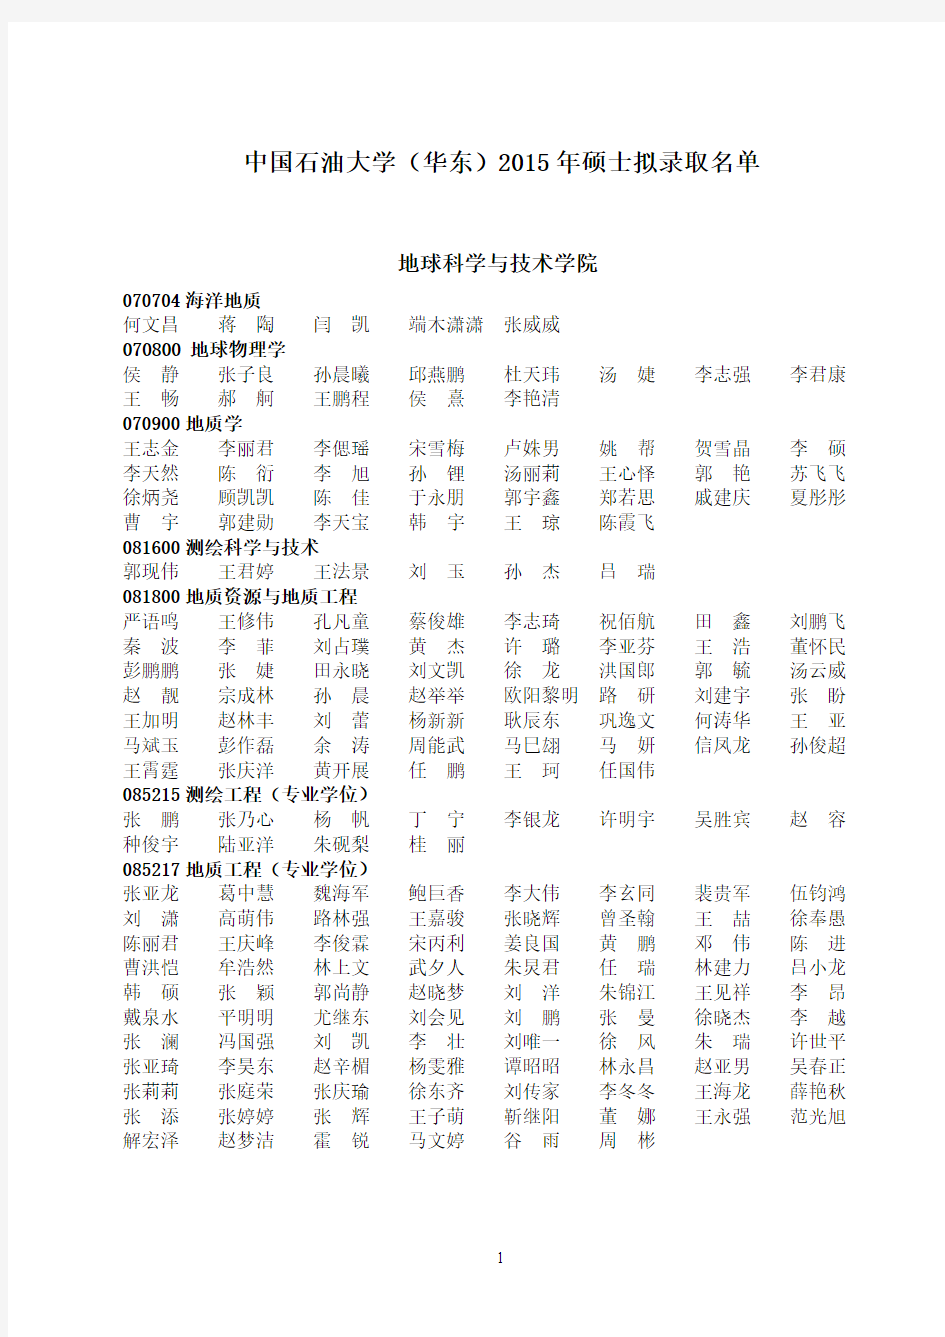 中国石油大学(华东)2015年硕士拟录取名单